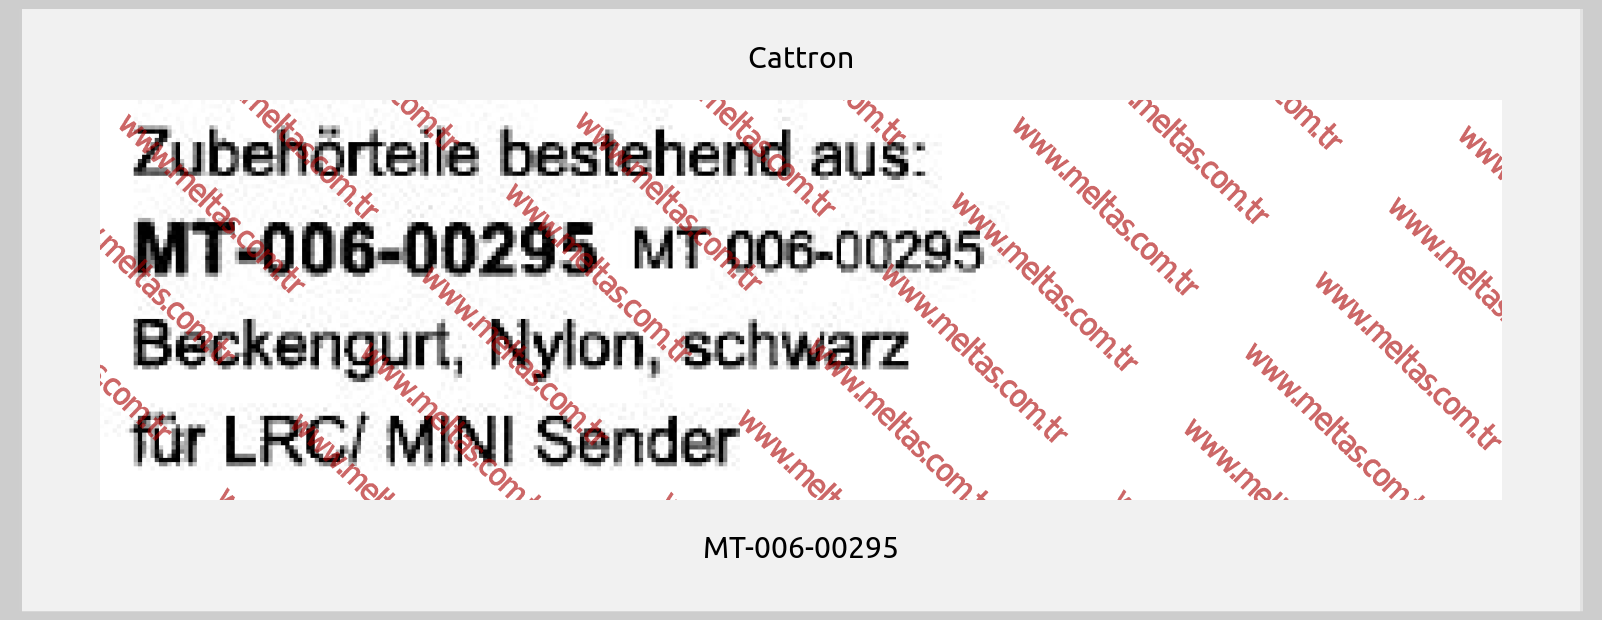 Cattron-MT-006-00295